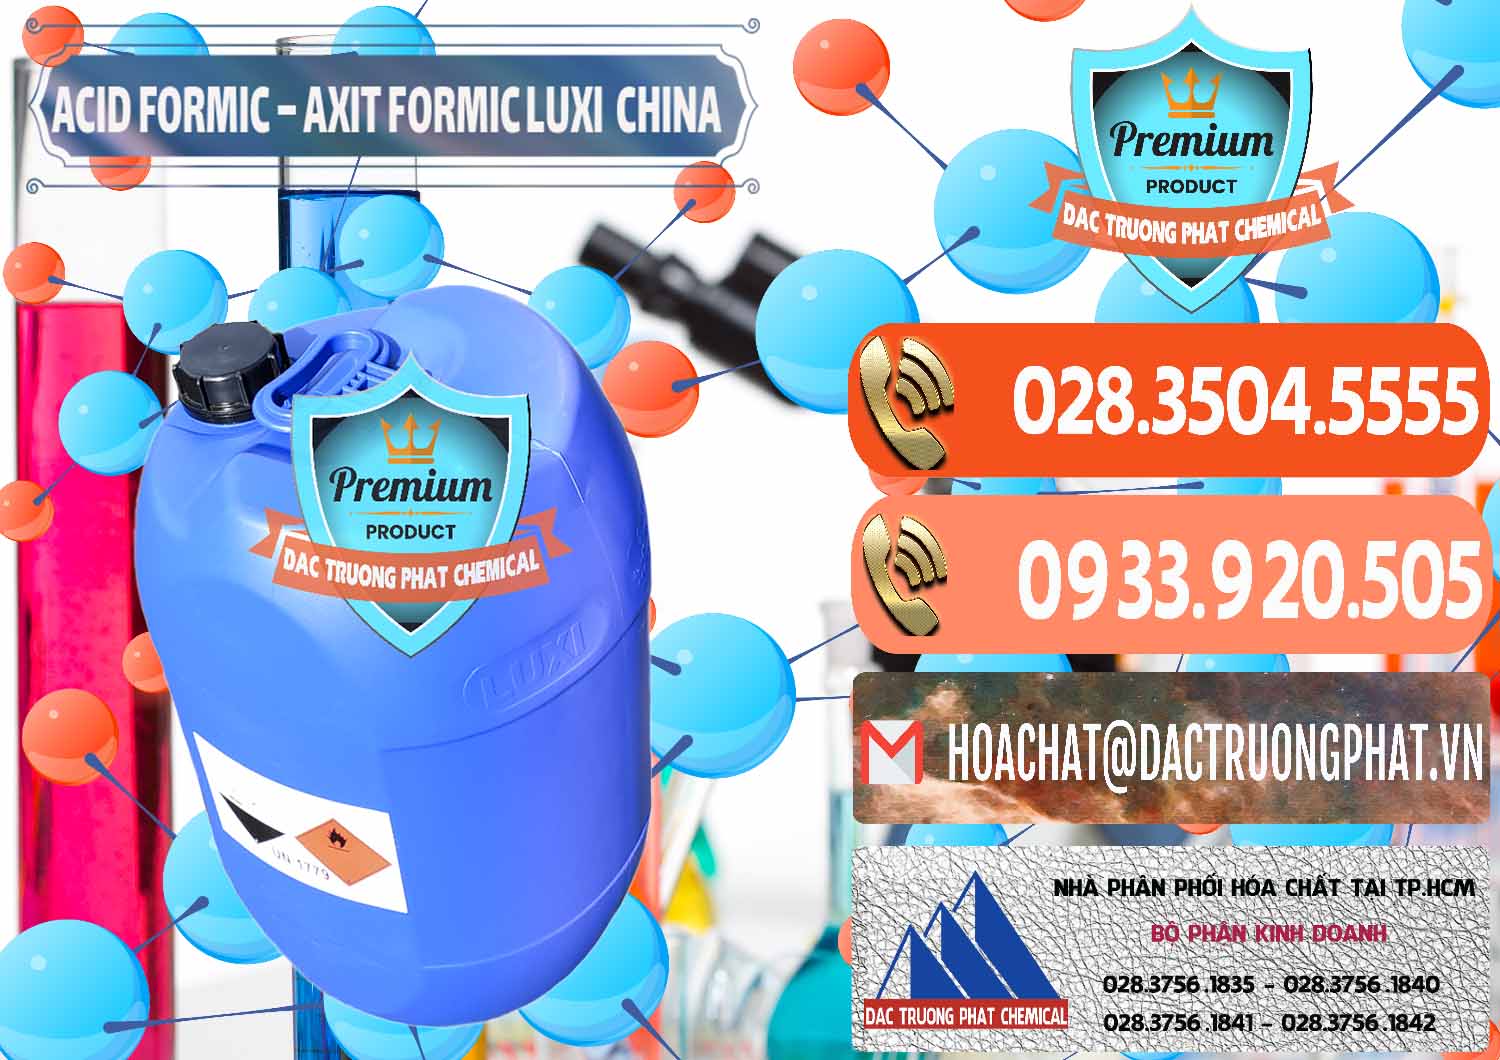 Cty chuyên kinh doanh & bán Acid Formic - Axit Formic Luxi Trung Quốc China - 0029 - Đơn vị cung cấp _ nhập khẩu hóa chất tại TP.HCM - hoachatmientay.com